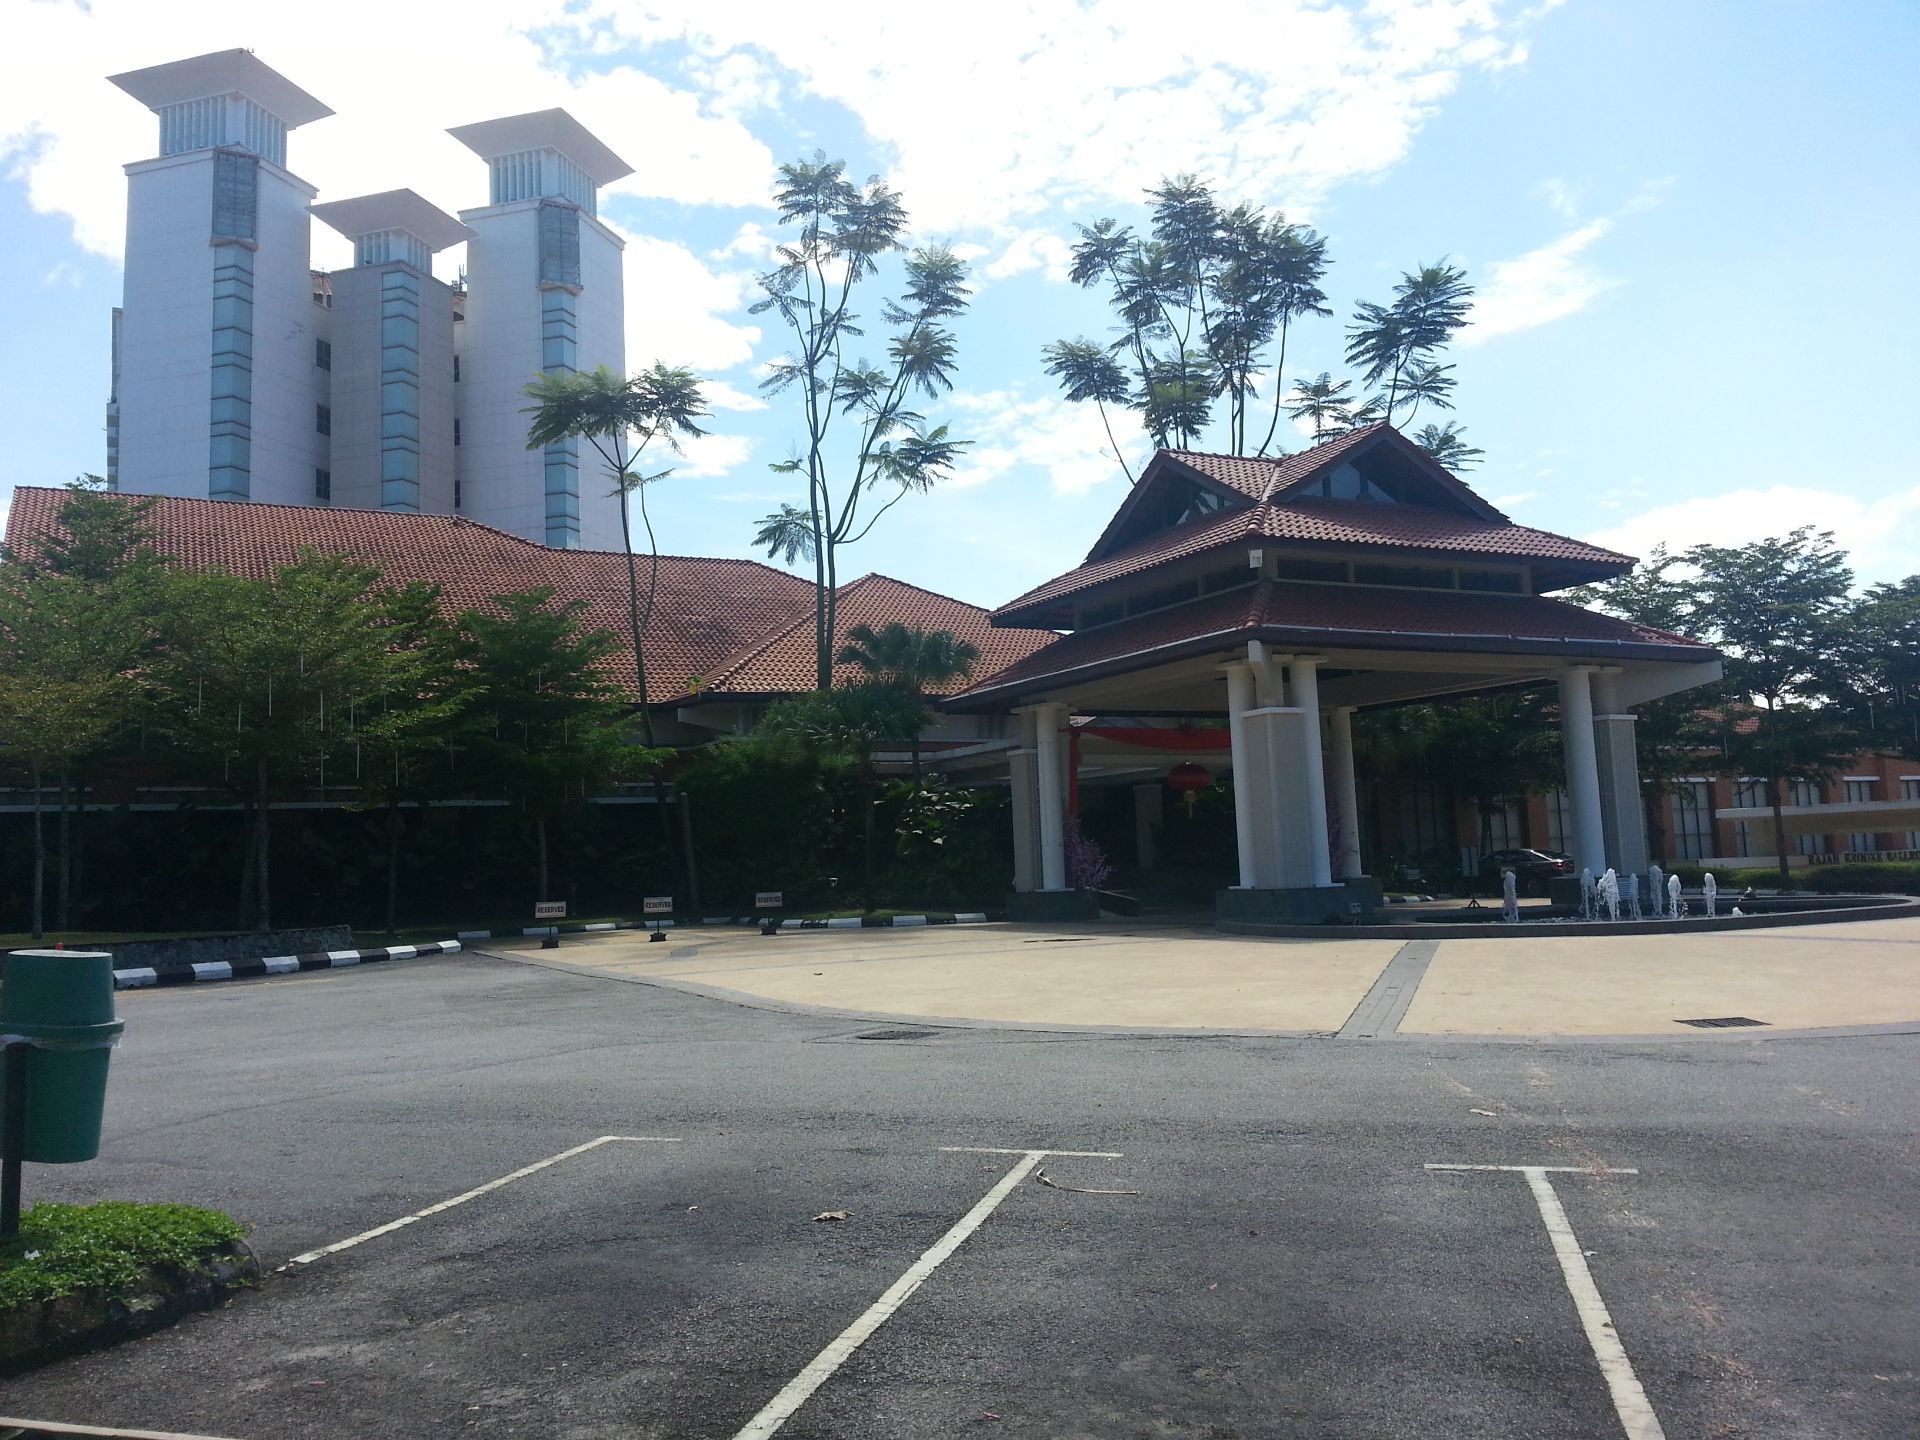 马来西亚 芙蓉汝来温泉度假酒店是位于芙蓉市中心的一家高档酒店。酒店地理位置优越，距离吉隆坡国际机场需